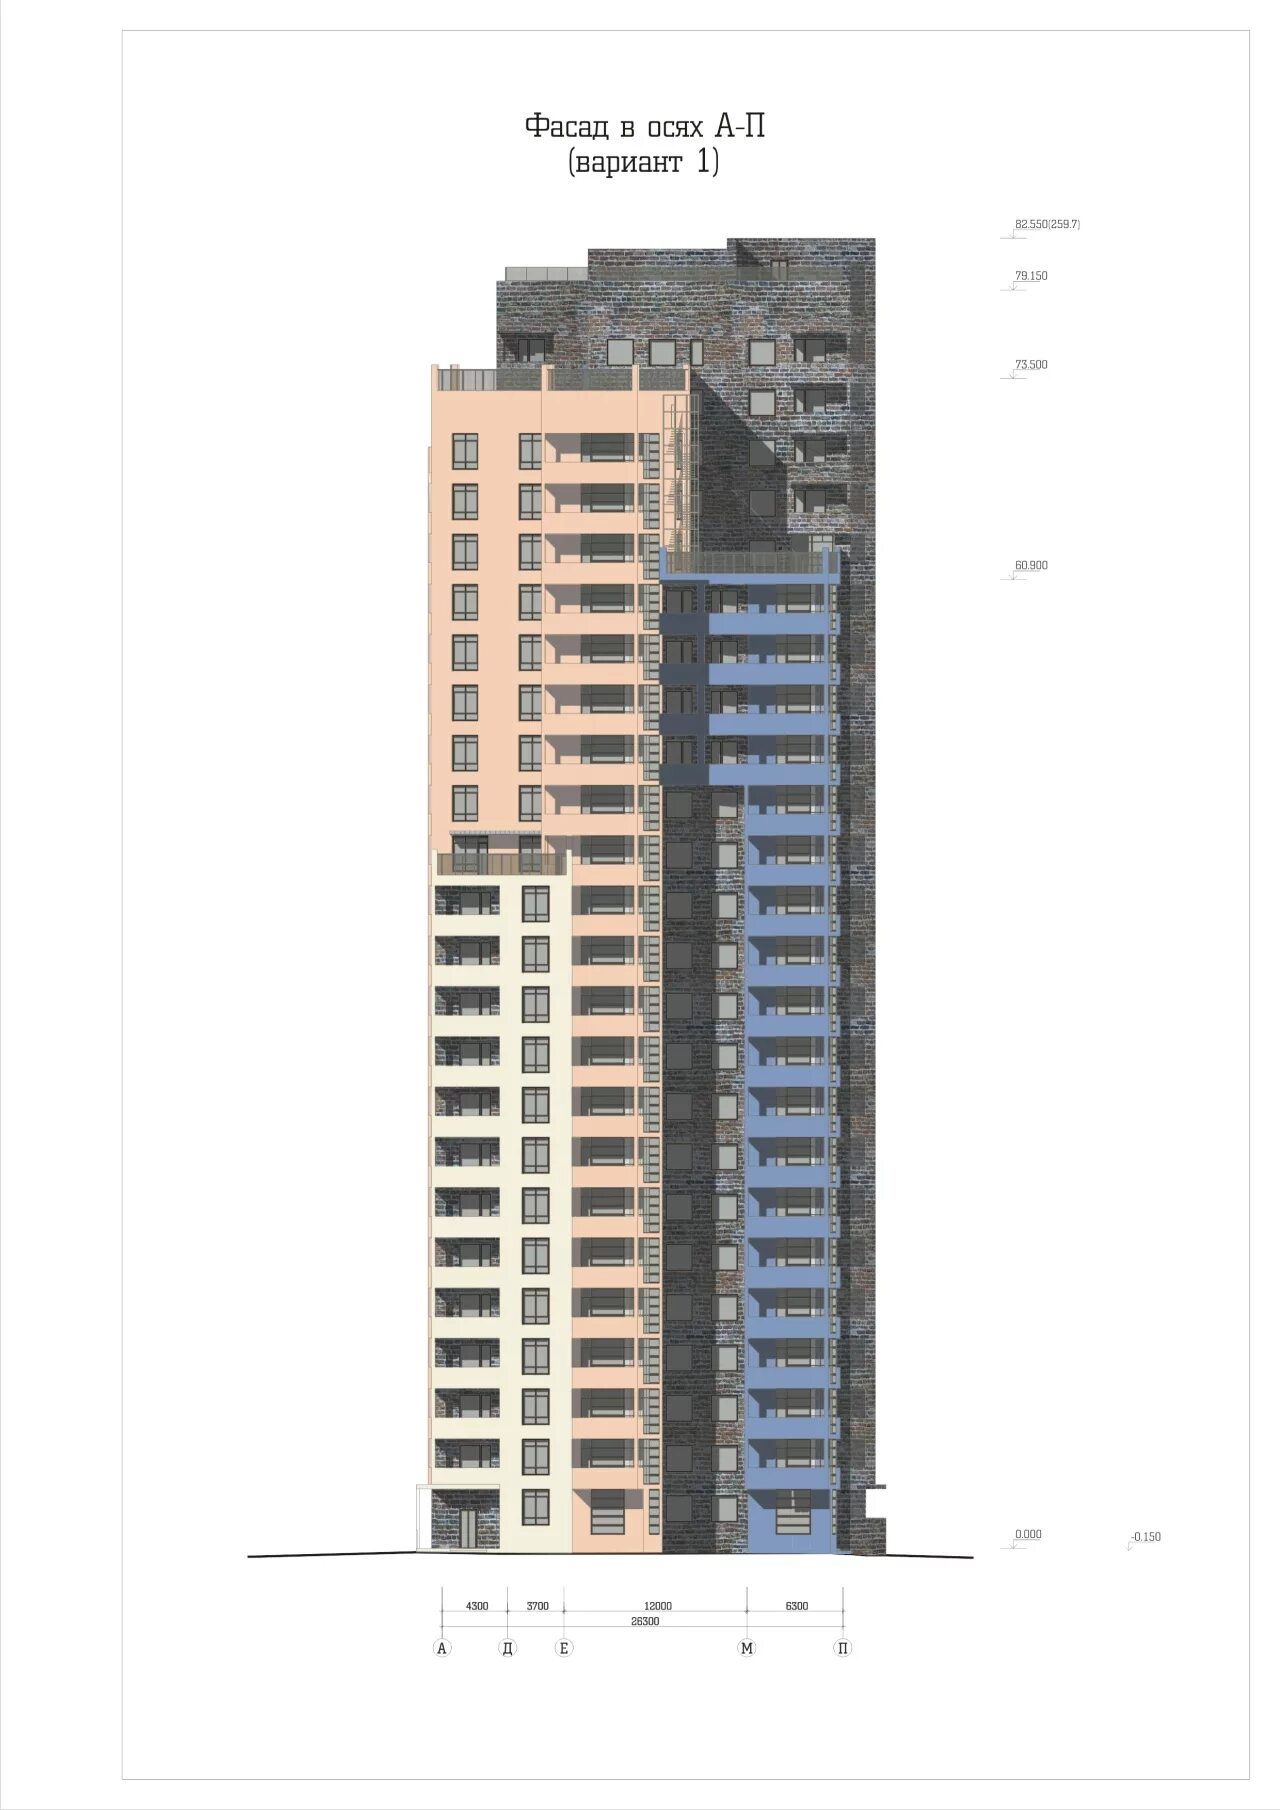 Какая высота дома 9 этажей. Высота 24 этажного дома. Высота этажного дома в метрах. Высота 24 этажного здания в метрах. 24 Этажный дом высота в метрах.